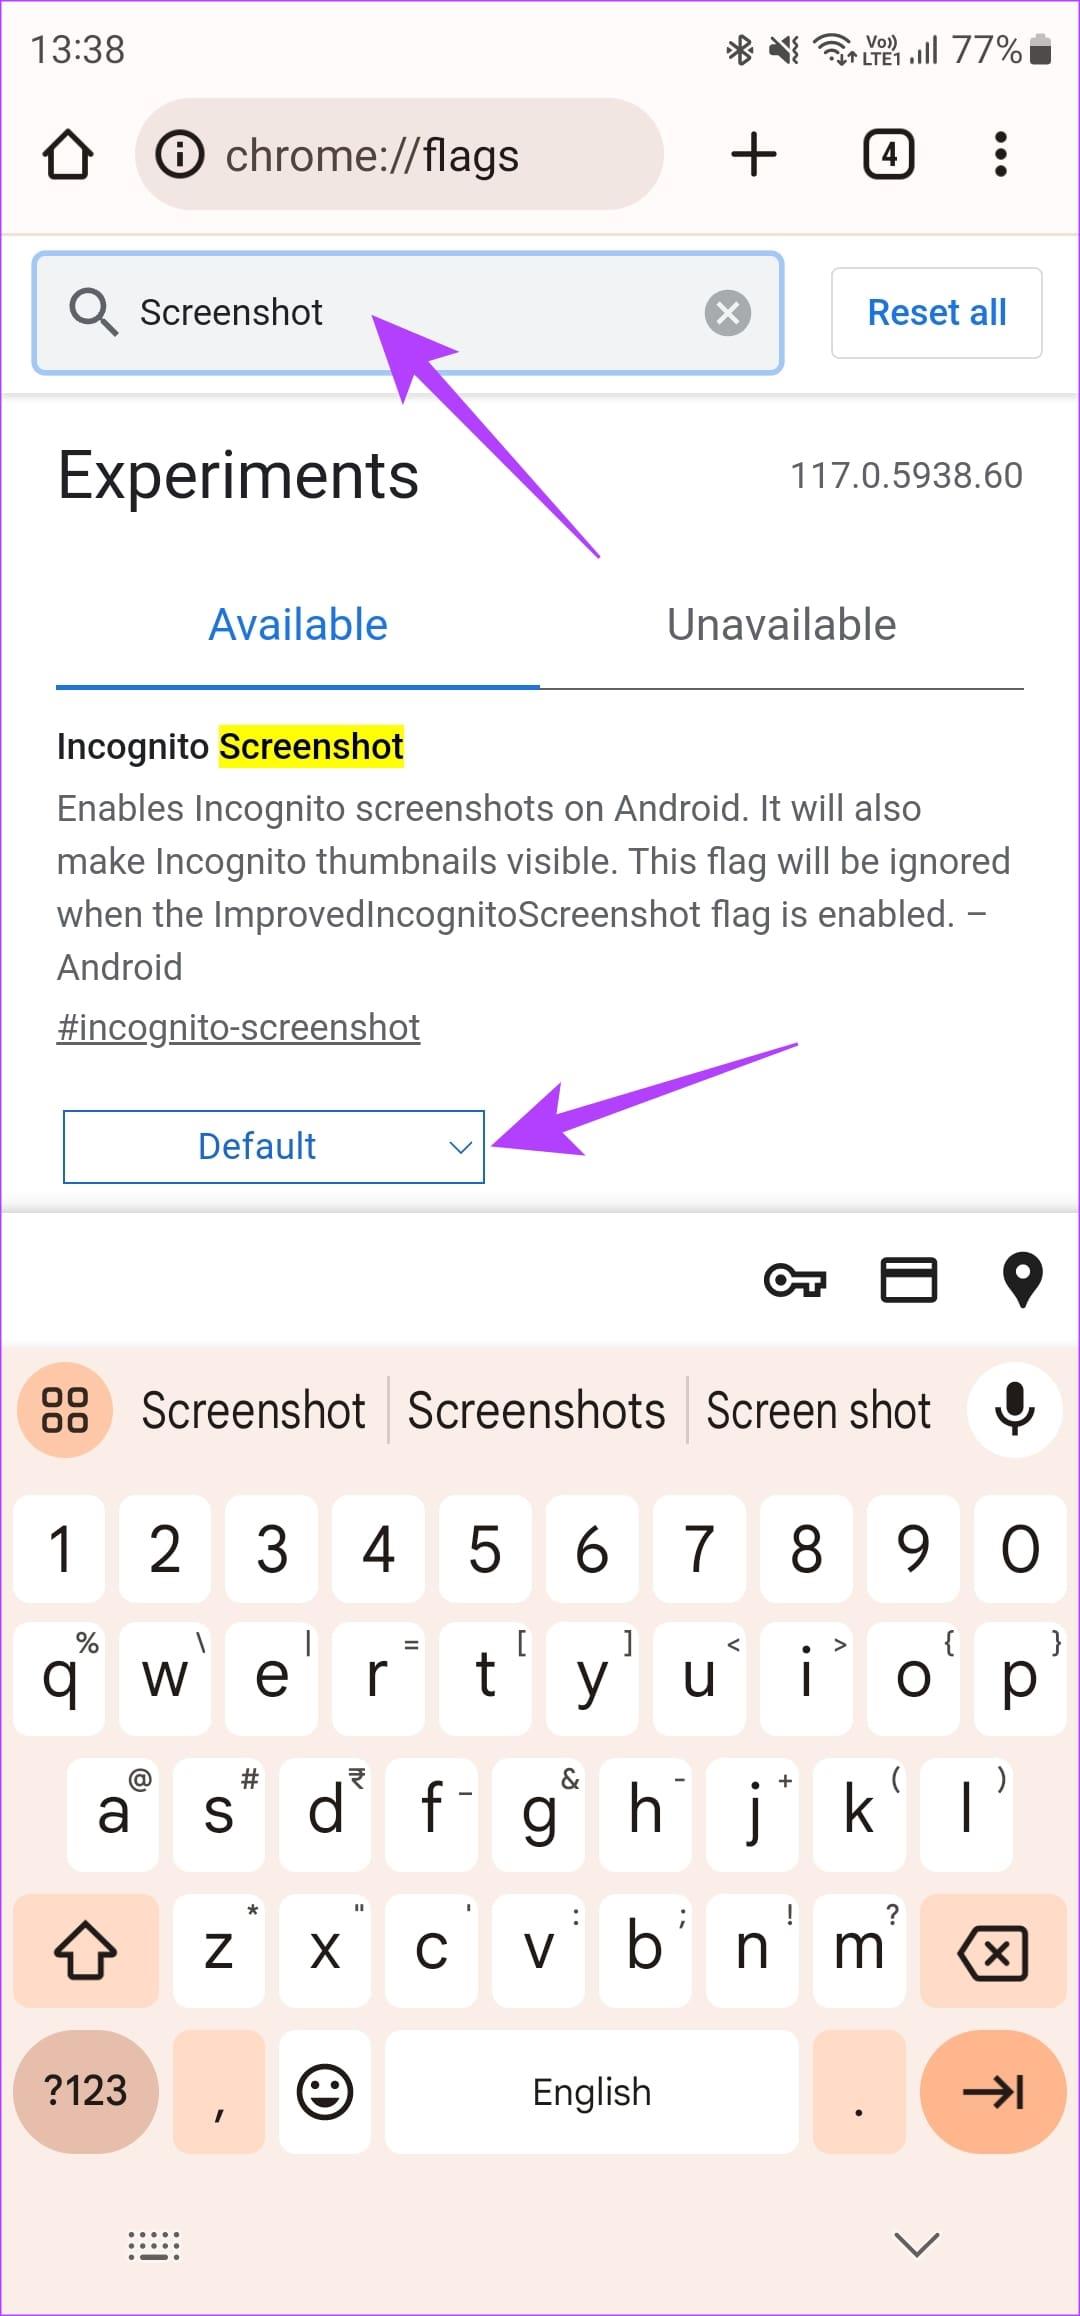 Android のセキュリティ ポリシーが原因でスクリーンショットを撮ることができない問題を修正する 6 つの最良の方法